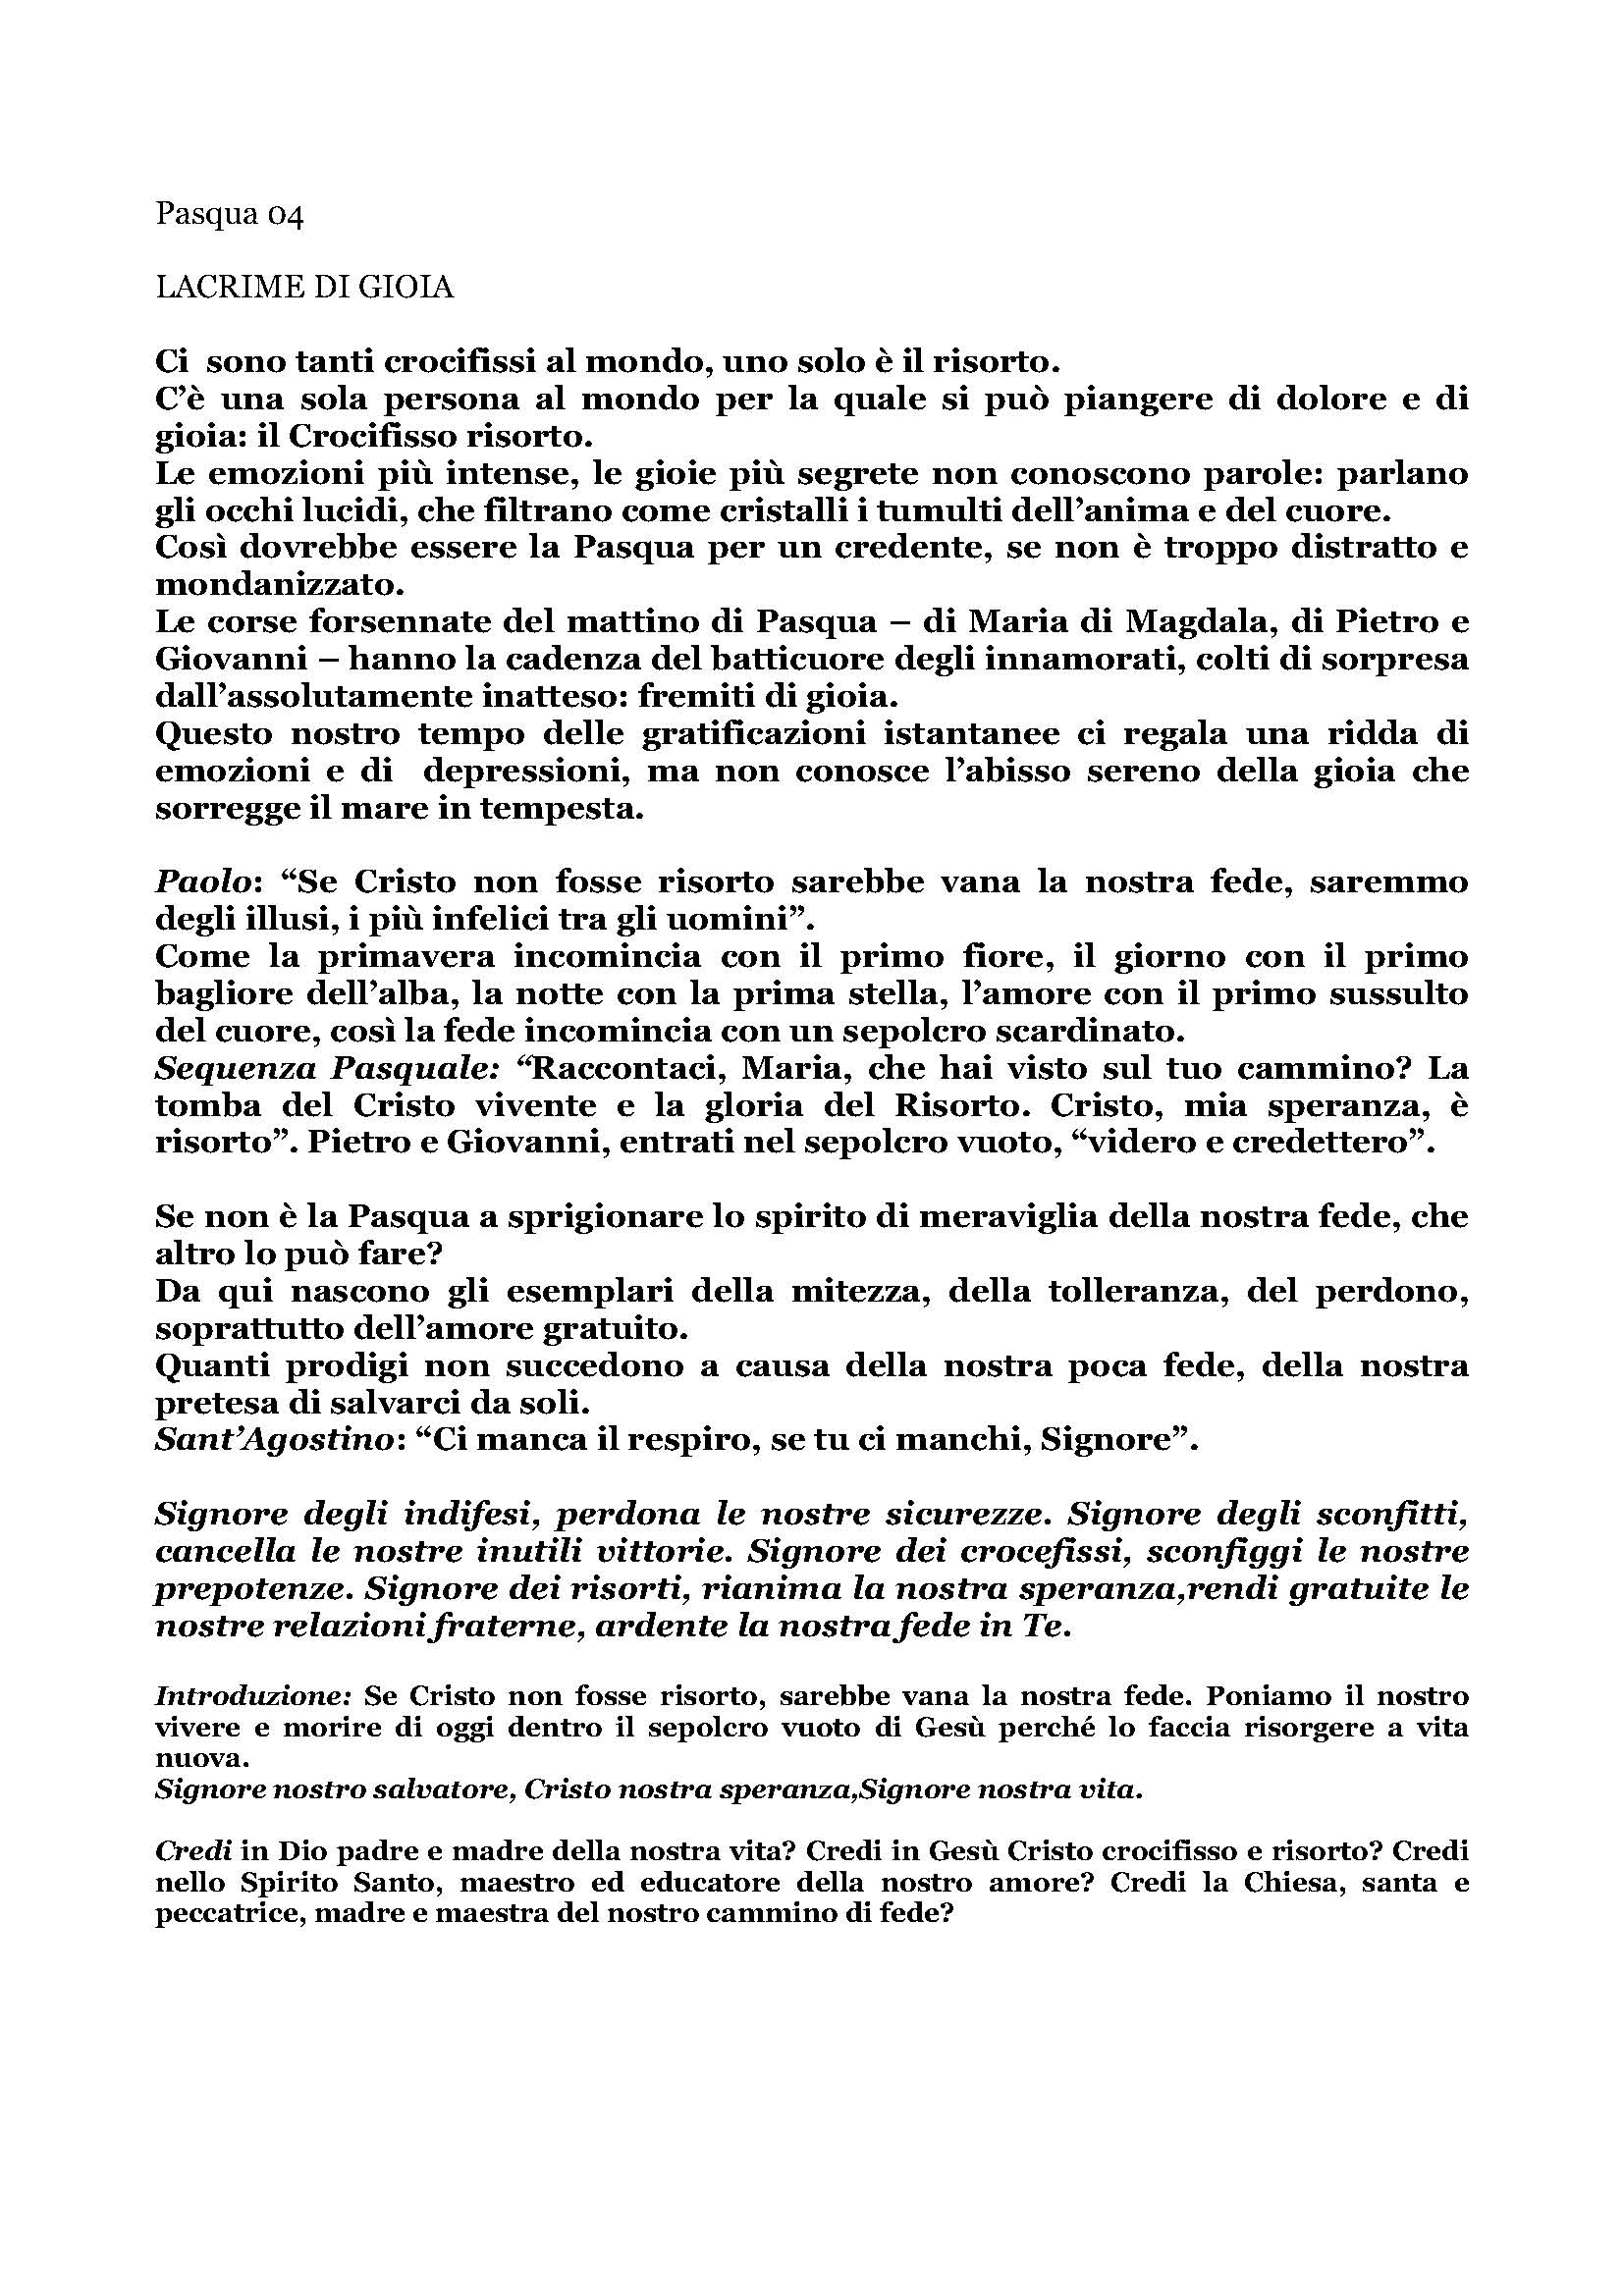 Pasqua_04_LACRIME_DI_GIOIA.pdf